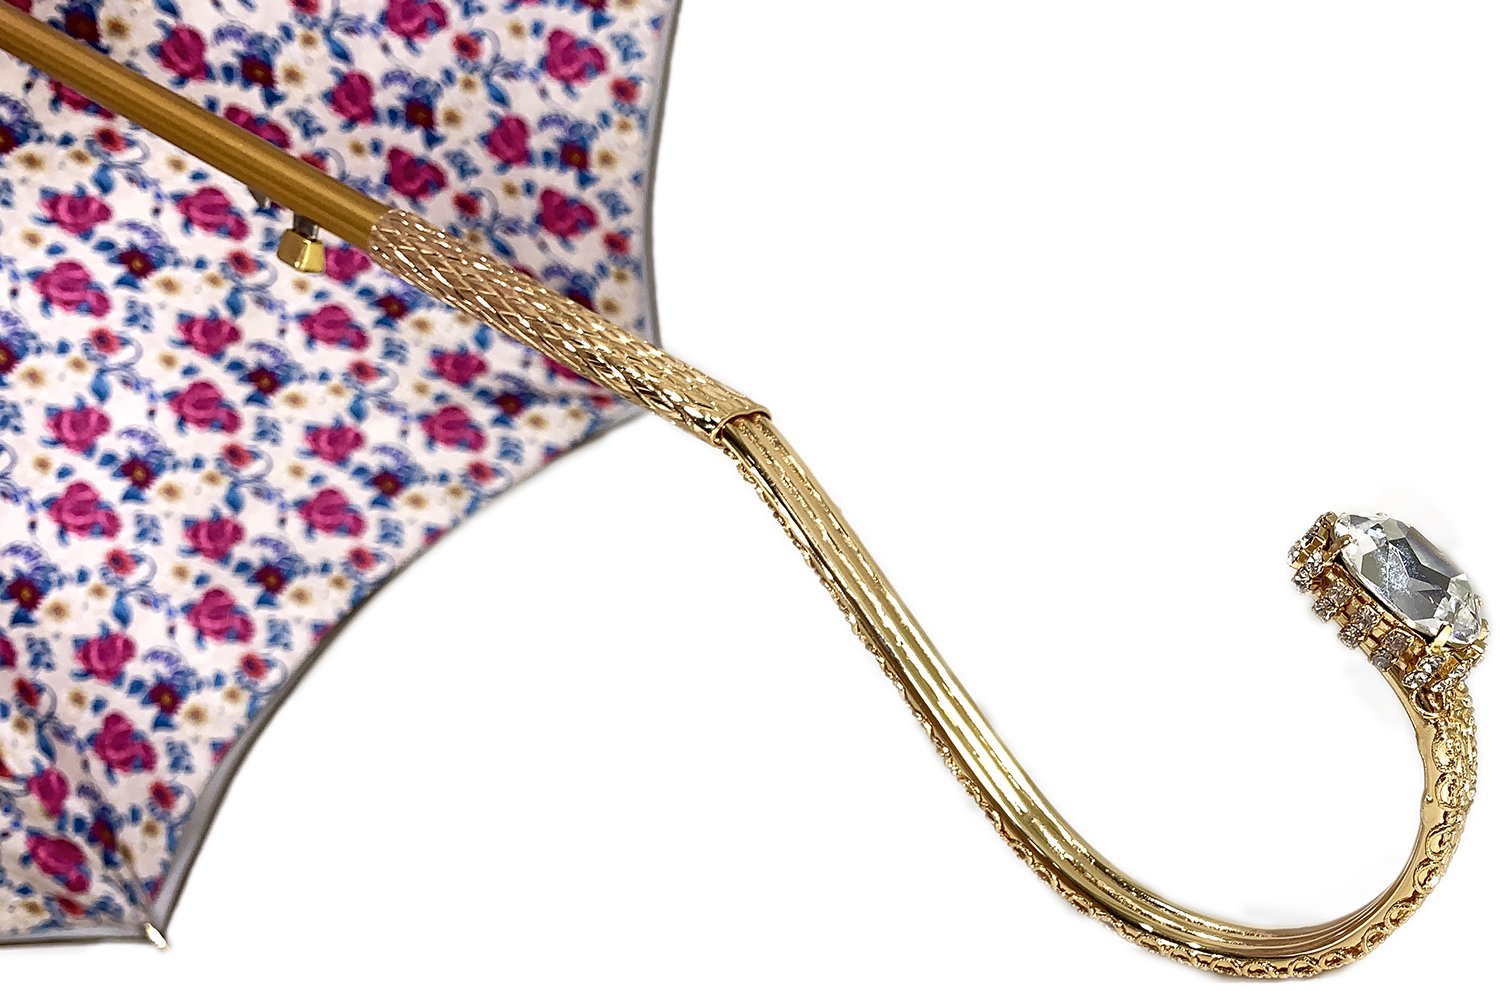 Il Marchesato Ivory with Flowered Interior Women's Umbrella - il-marchesato